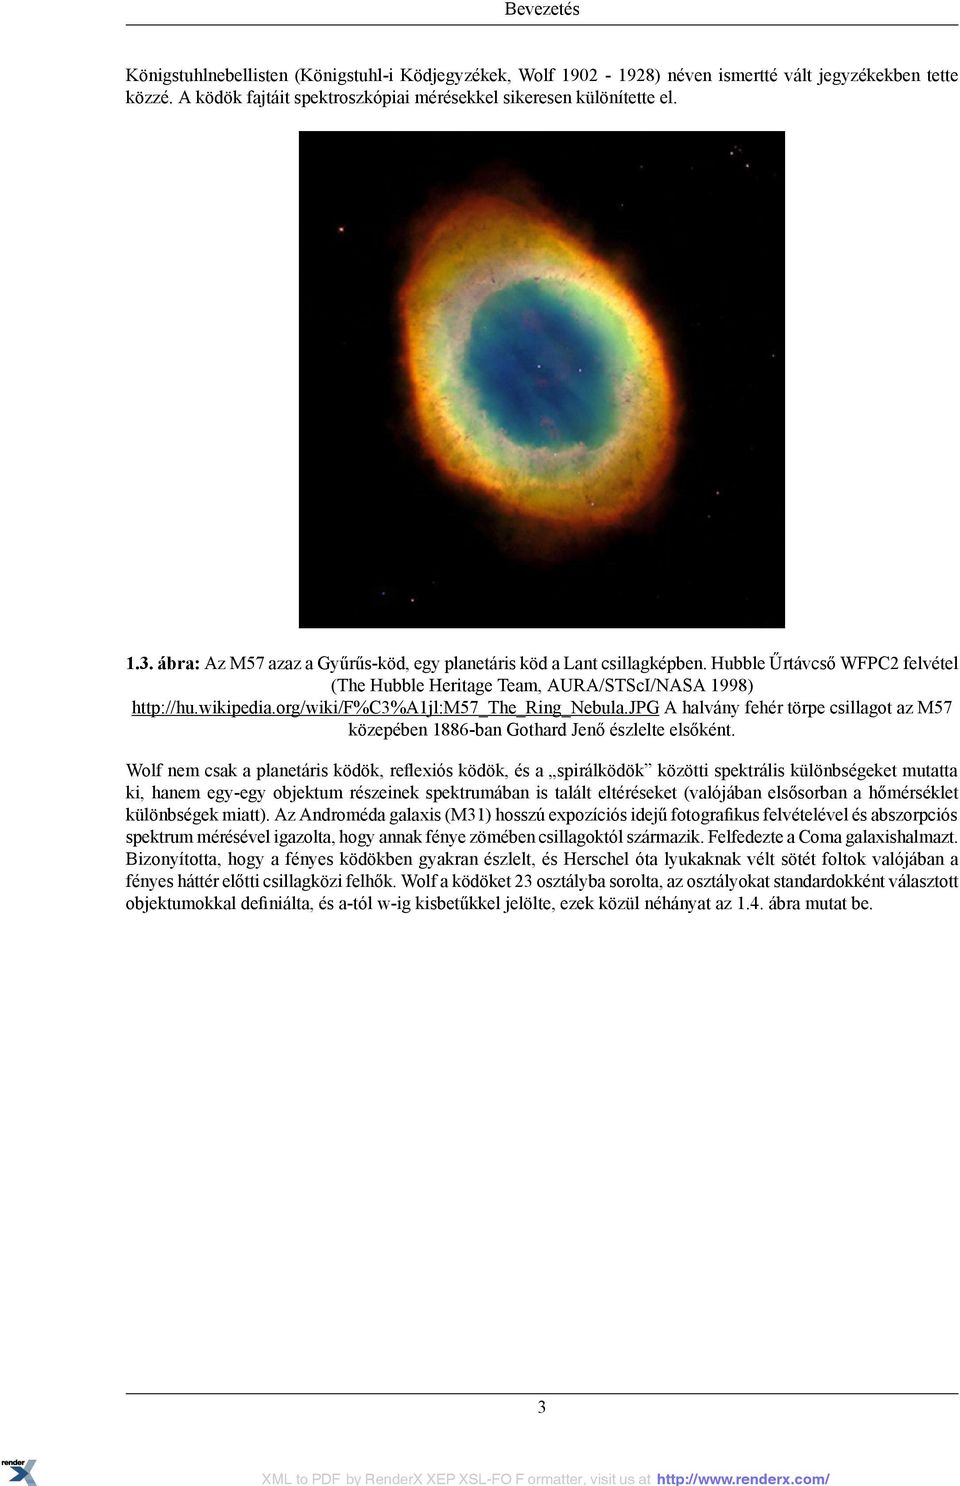 org/wiki/f%c3%a1jl:m57_the_ring_nebula.jpg A halvány fehér törpe csillagot az M57 közepében 1886-ban Gothard Jenő észlelte elsőként.